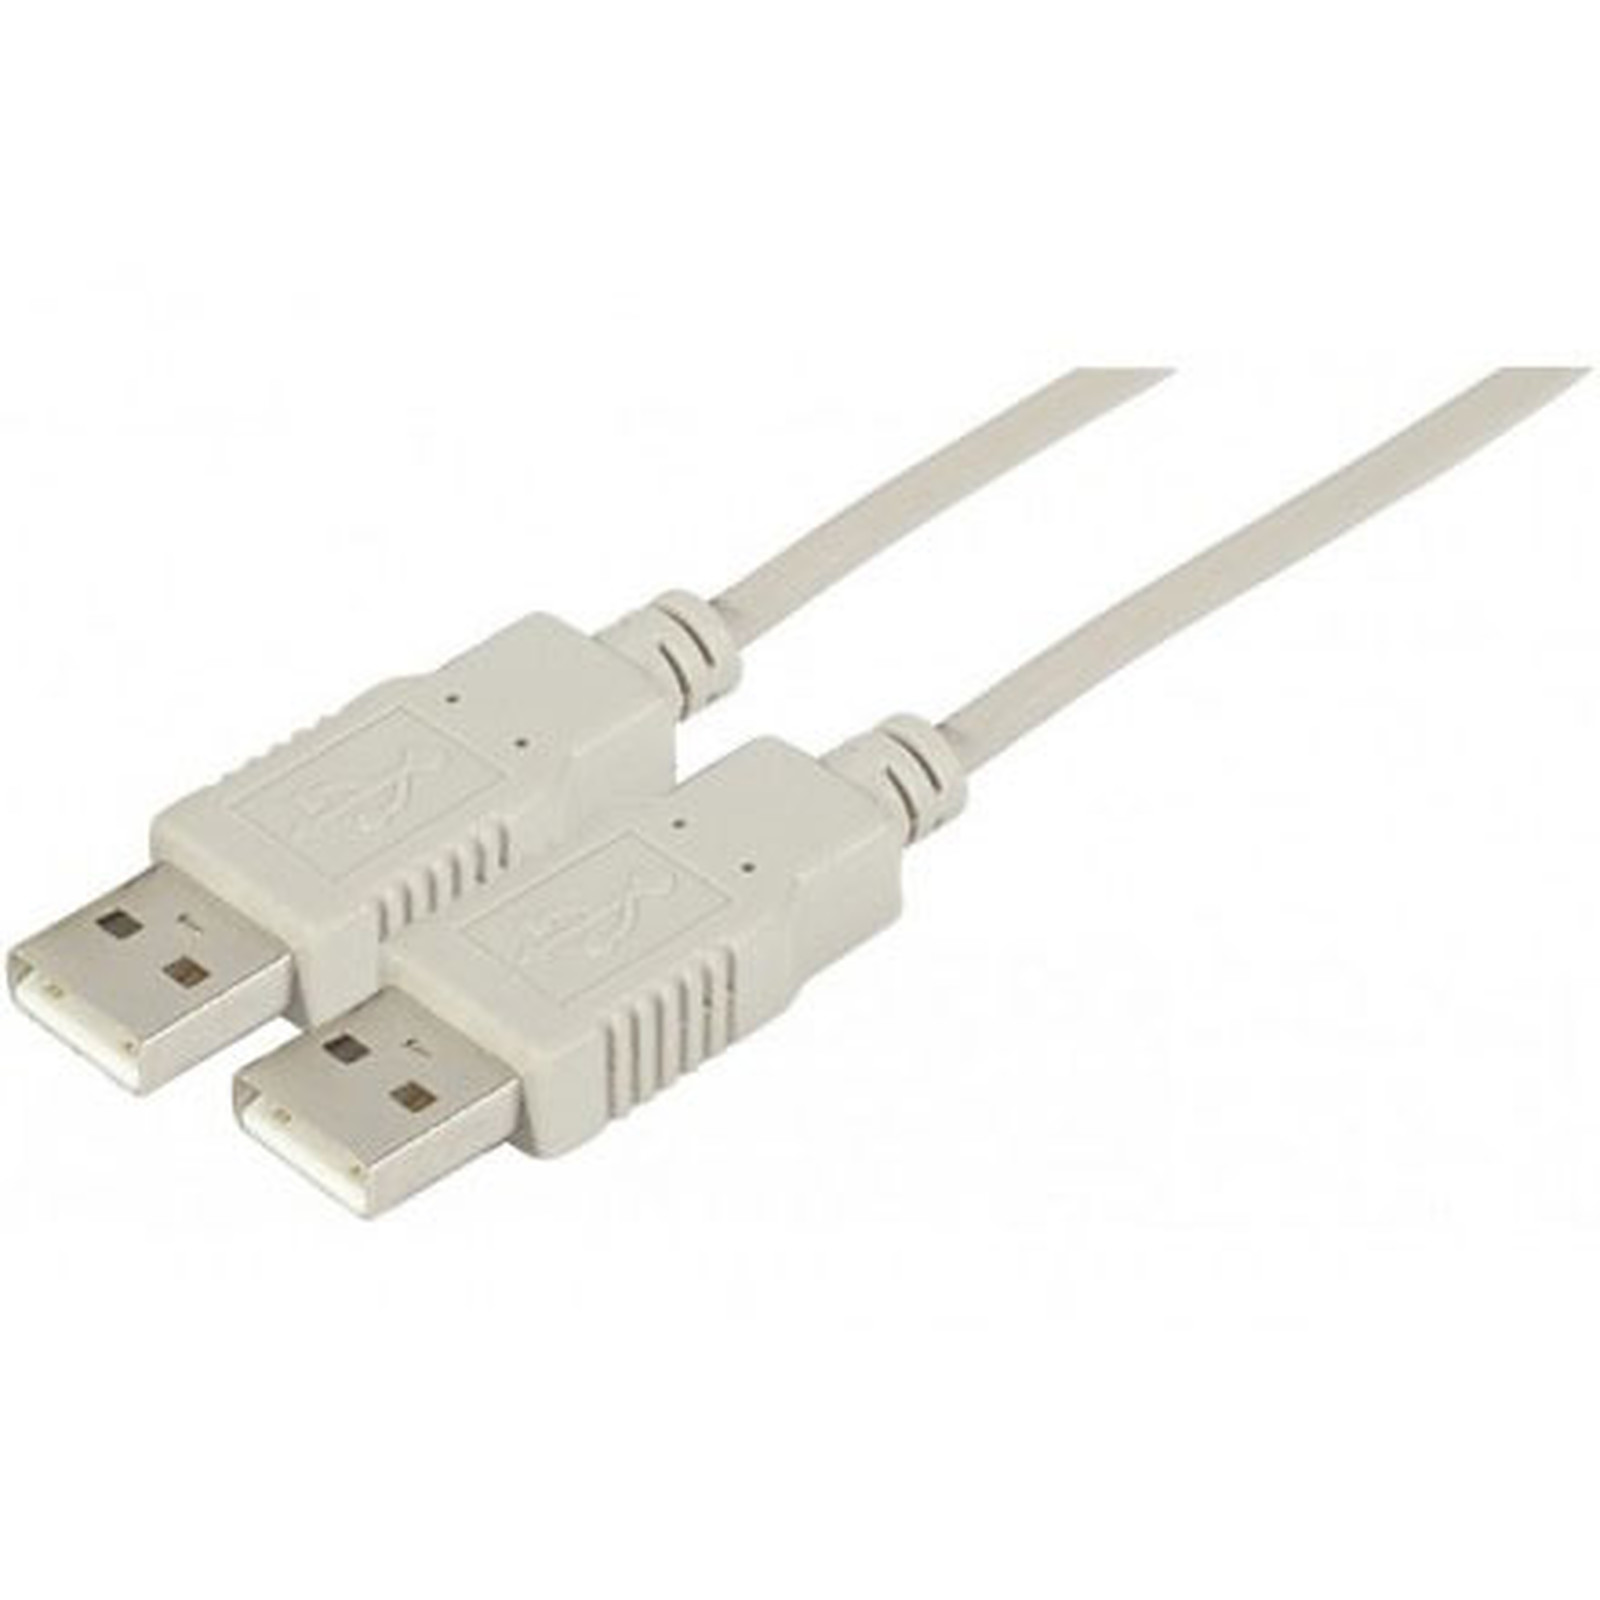 Cable USB 2.0 Type AA (Male/Male) - 1.8 m (Gris) - USB Generique